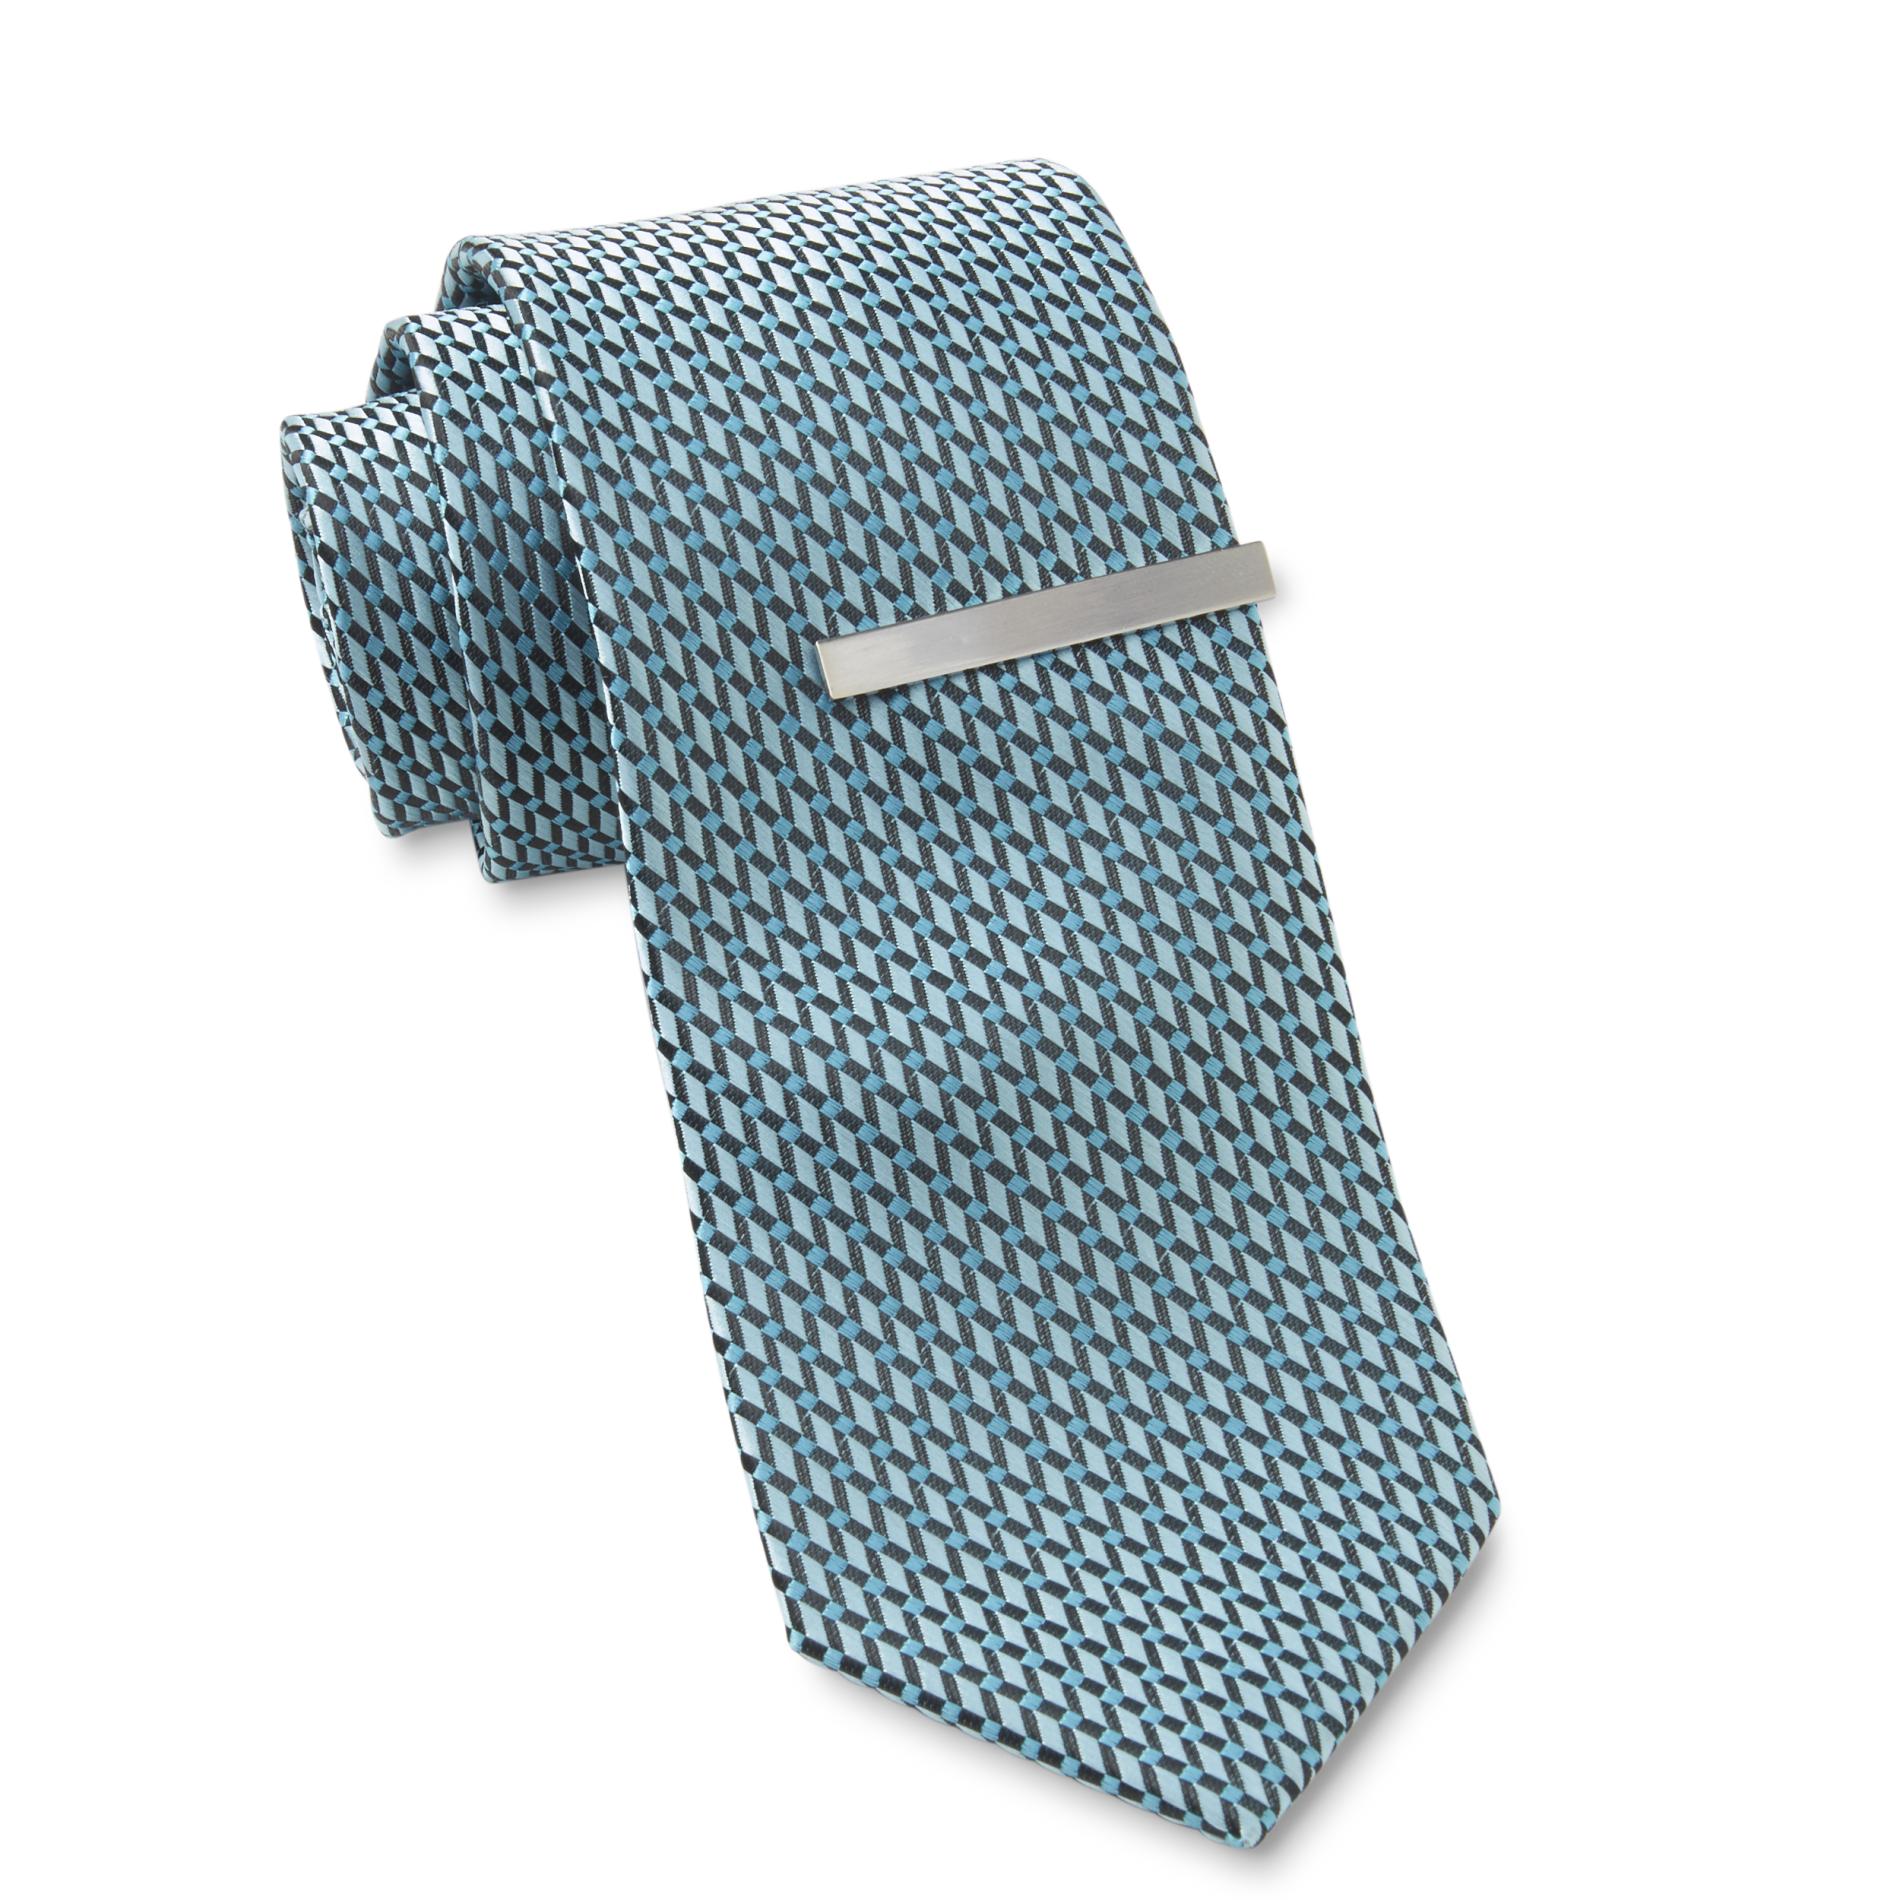 Structure Men's Necktie & Tie Bar - Check